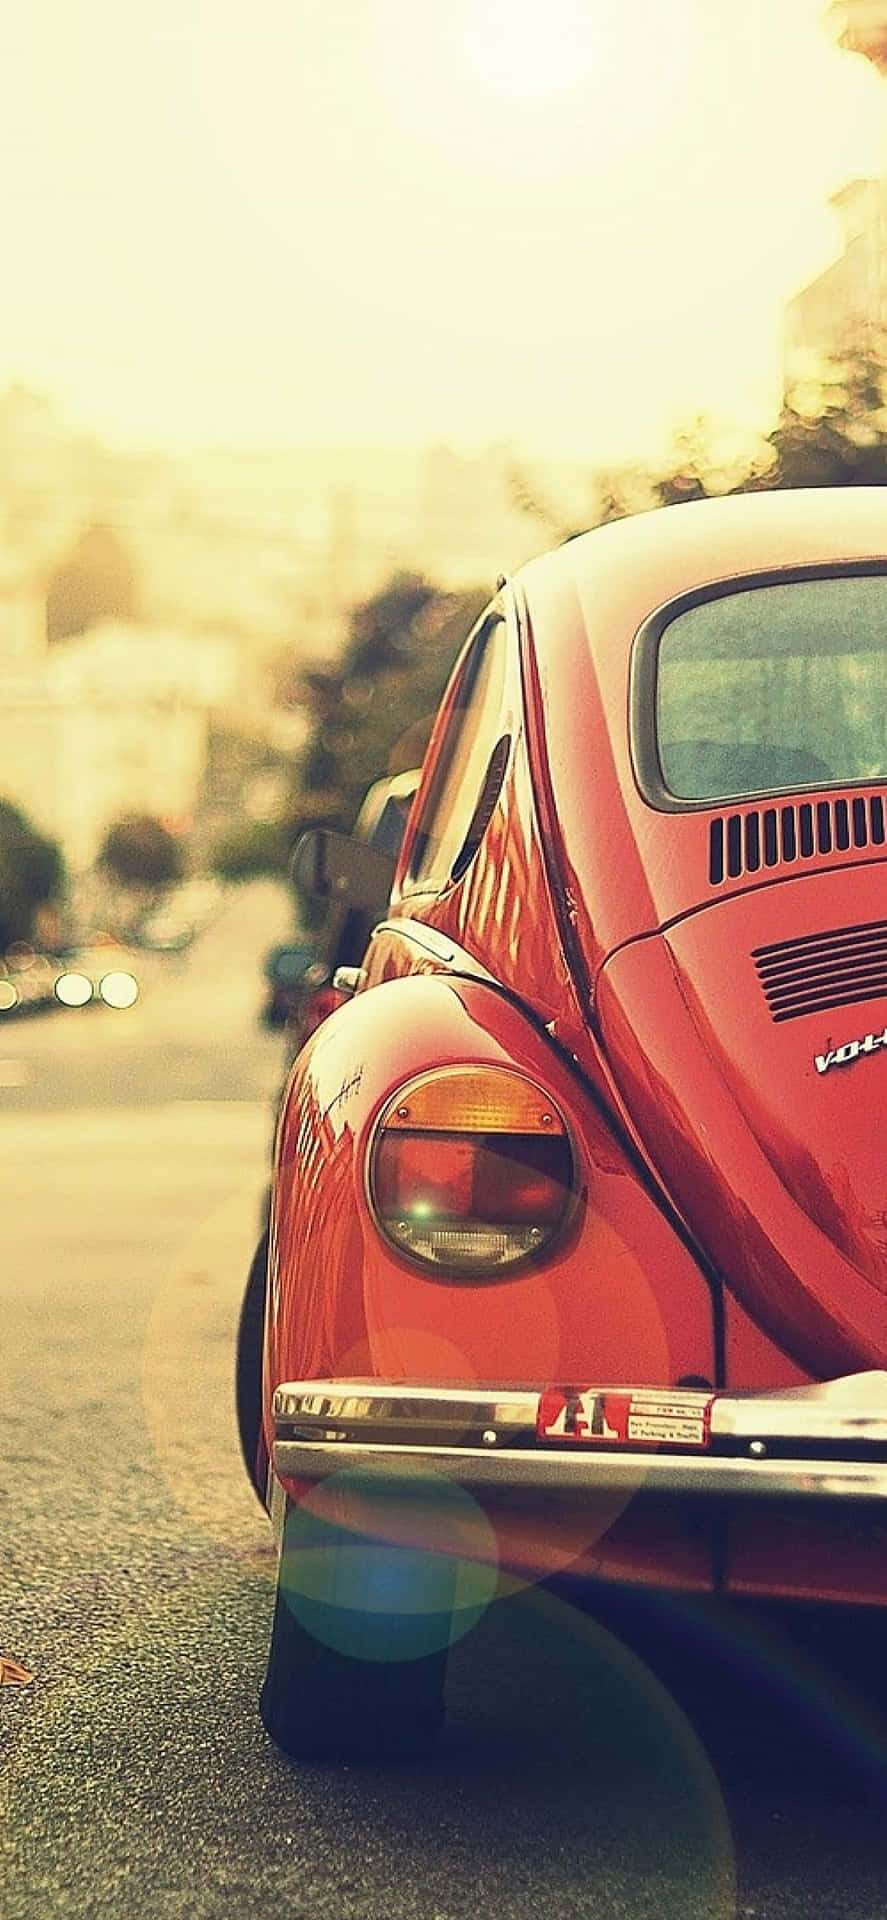 En rød Volkswagen bille parkeret på gaden. Wallpaper